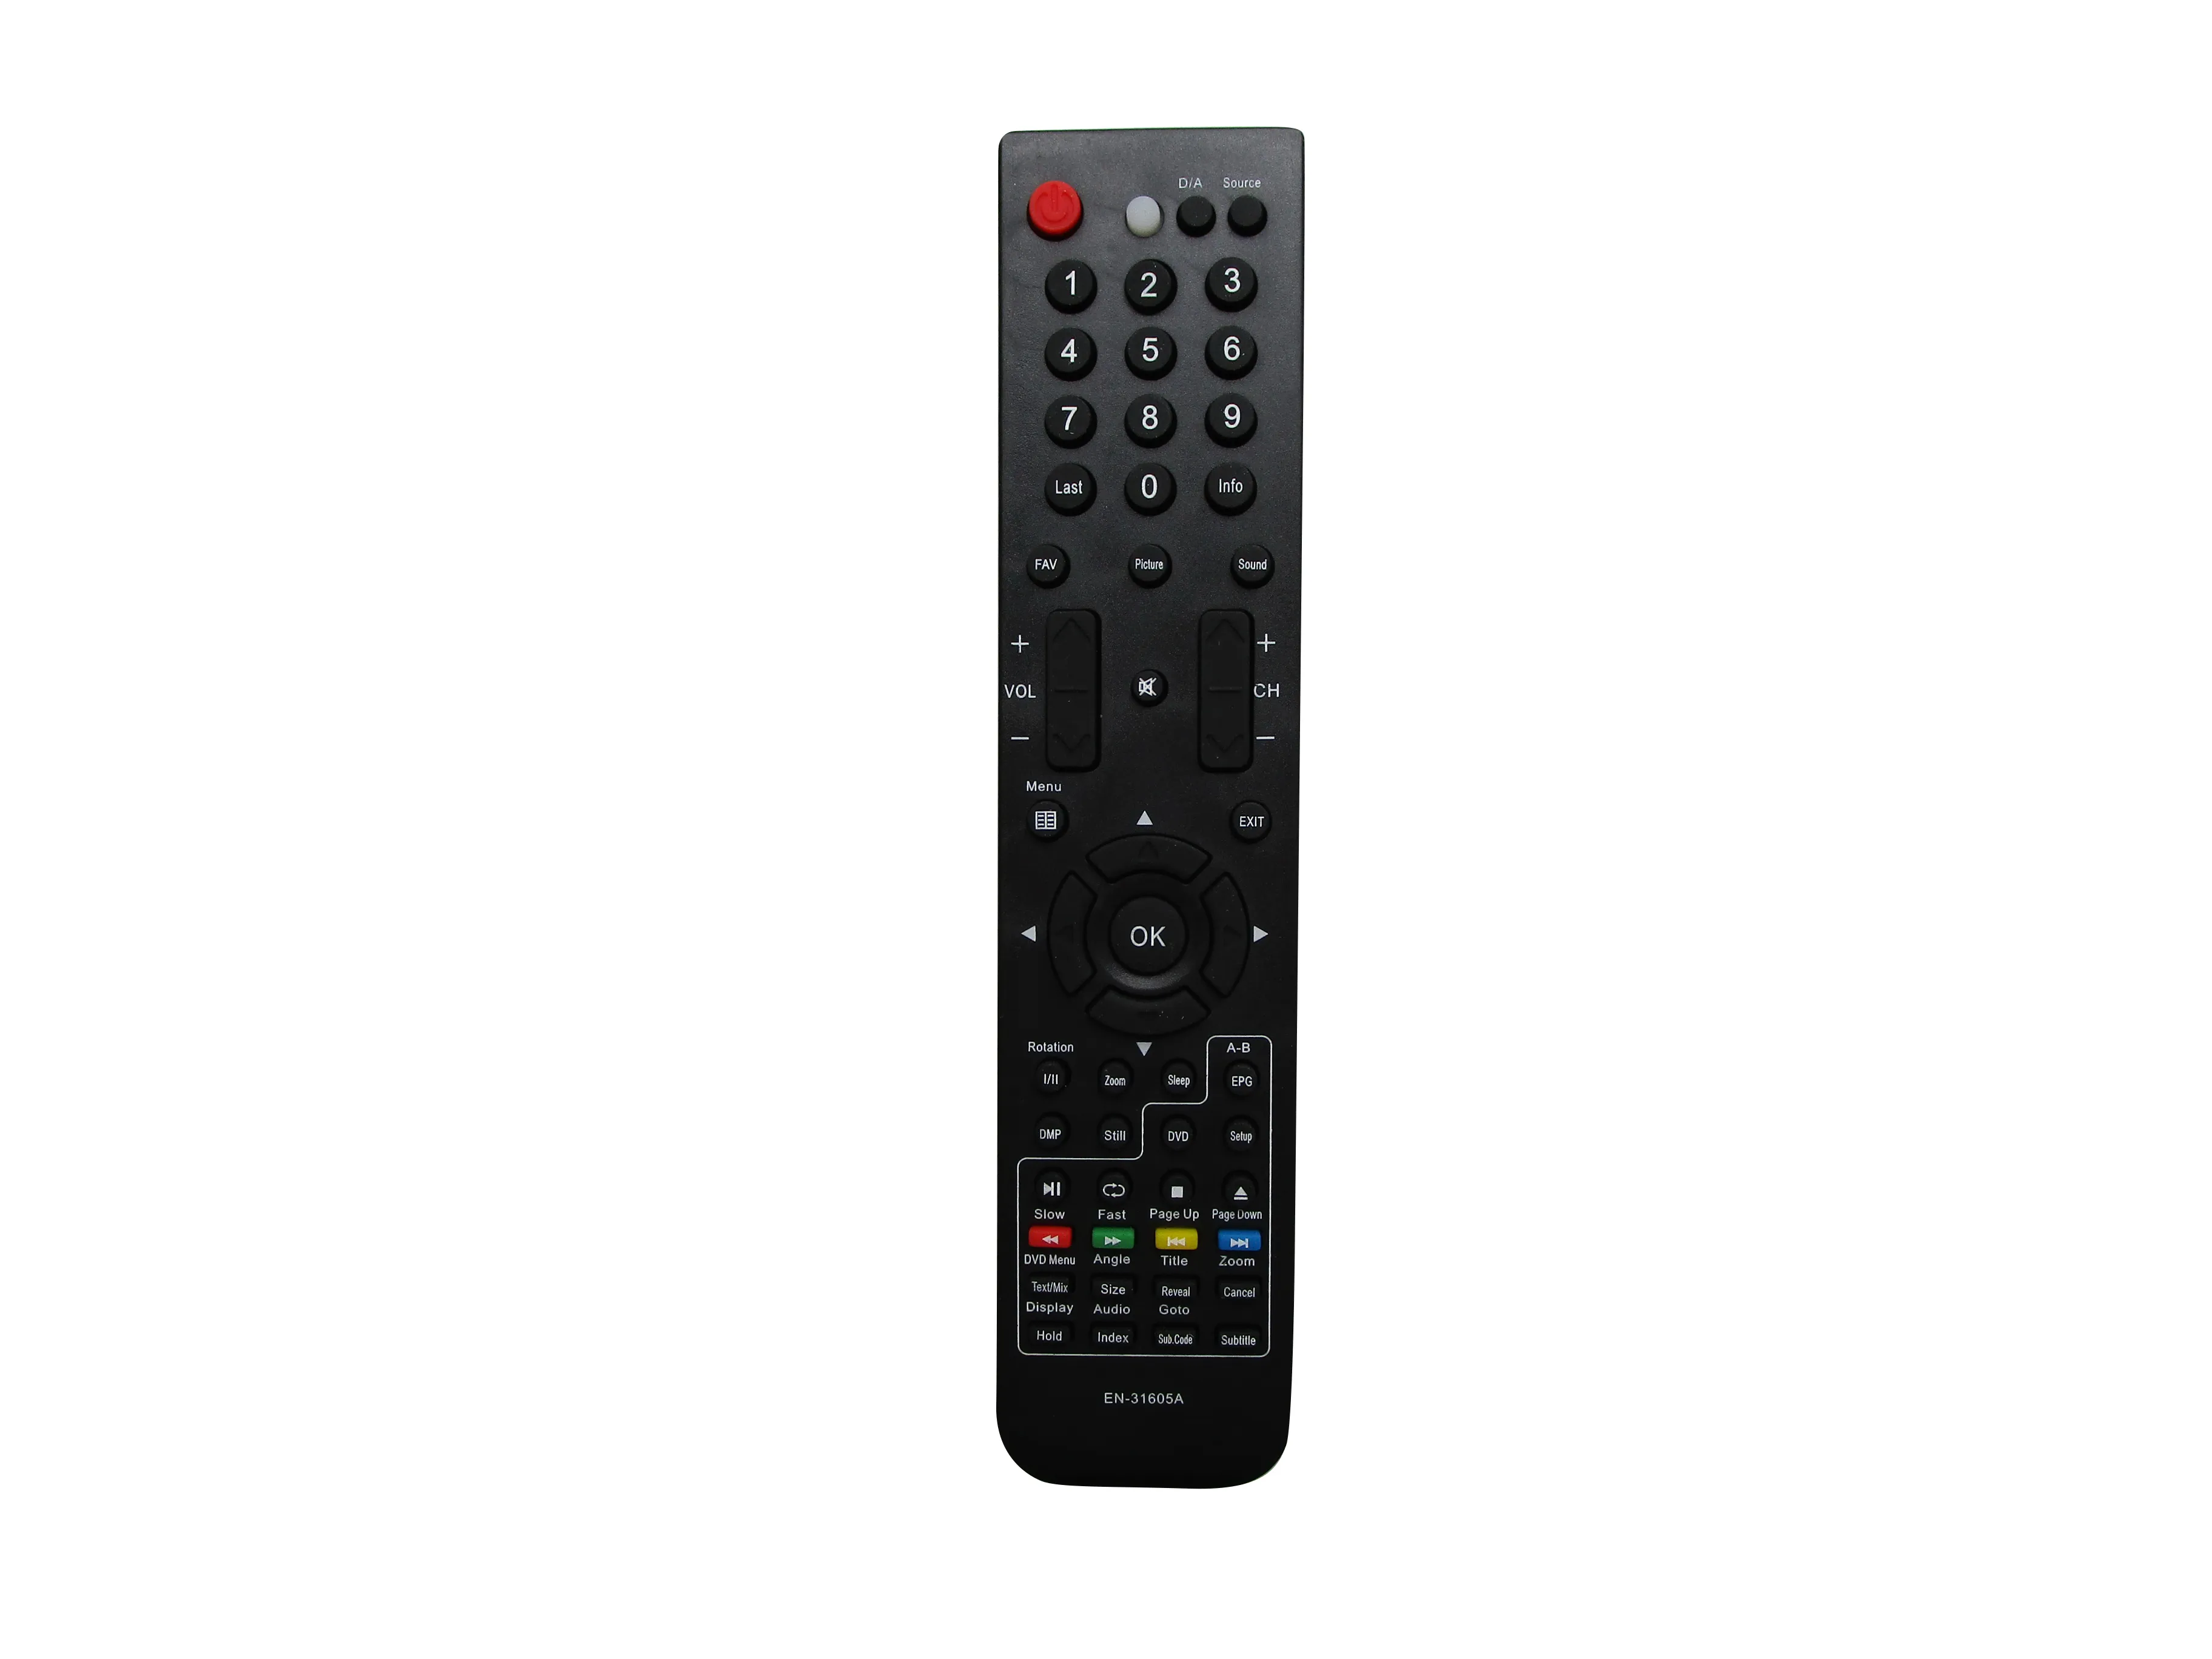 Remote Control For HISENSE EN-31605A HLD48V68 HLD55V68 HLD66P69 HLD81P69 HL48V88 HL55V88 HL66V88 HL81V68P HL81V88 HL94V88 HL106V68PZ HL119V88PZ LCD LED HDTV TV